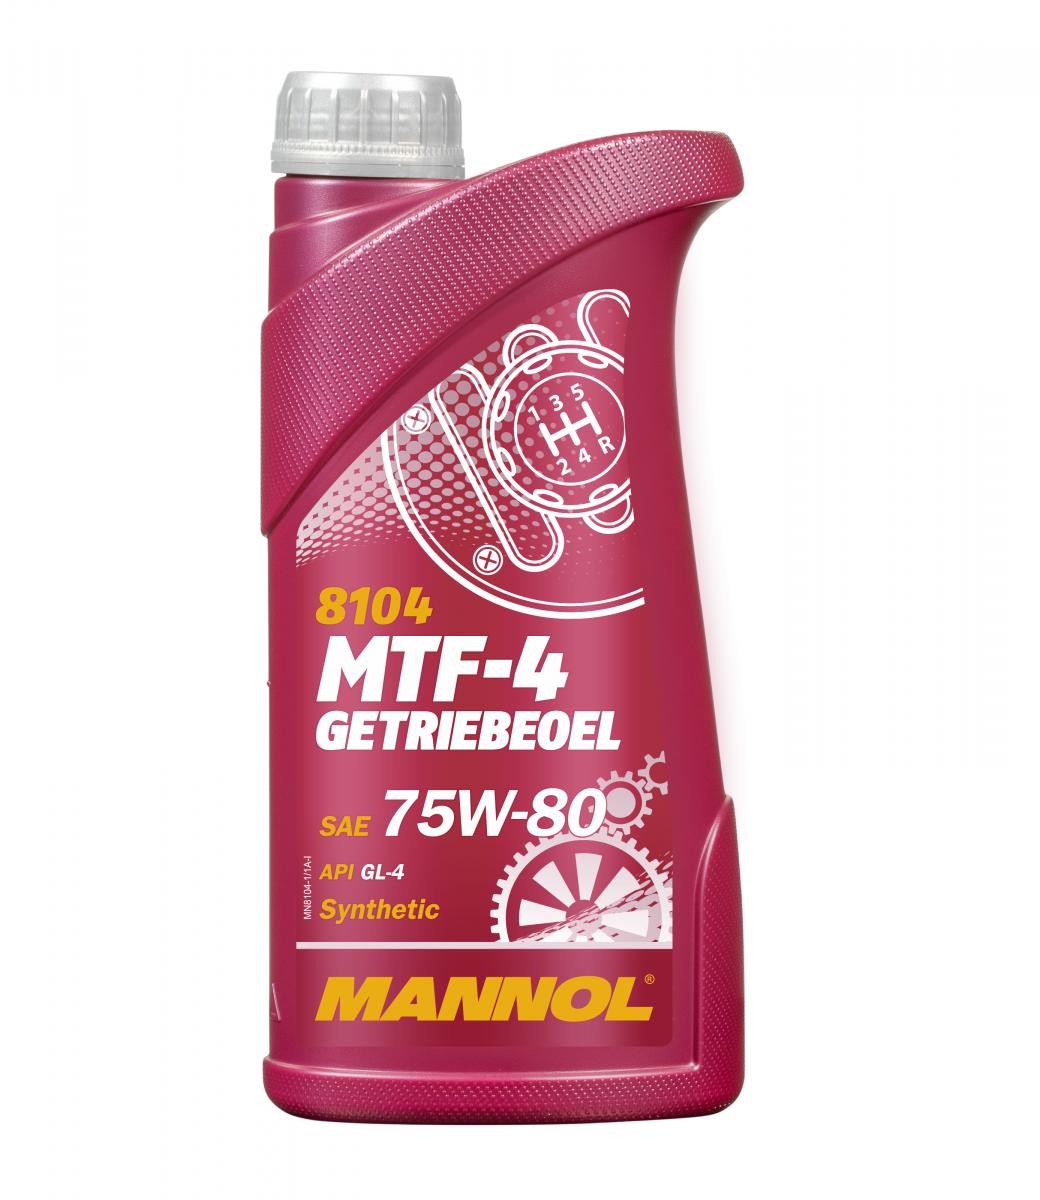 MANNOL MTF-4, GL-4 MN8104-1 CPI Getriebeöl Motorrad zum günstigen Preis